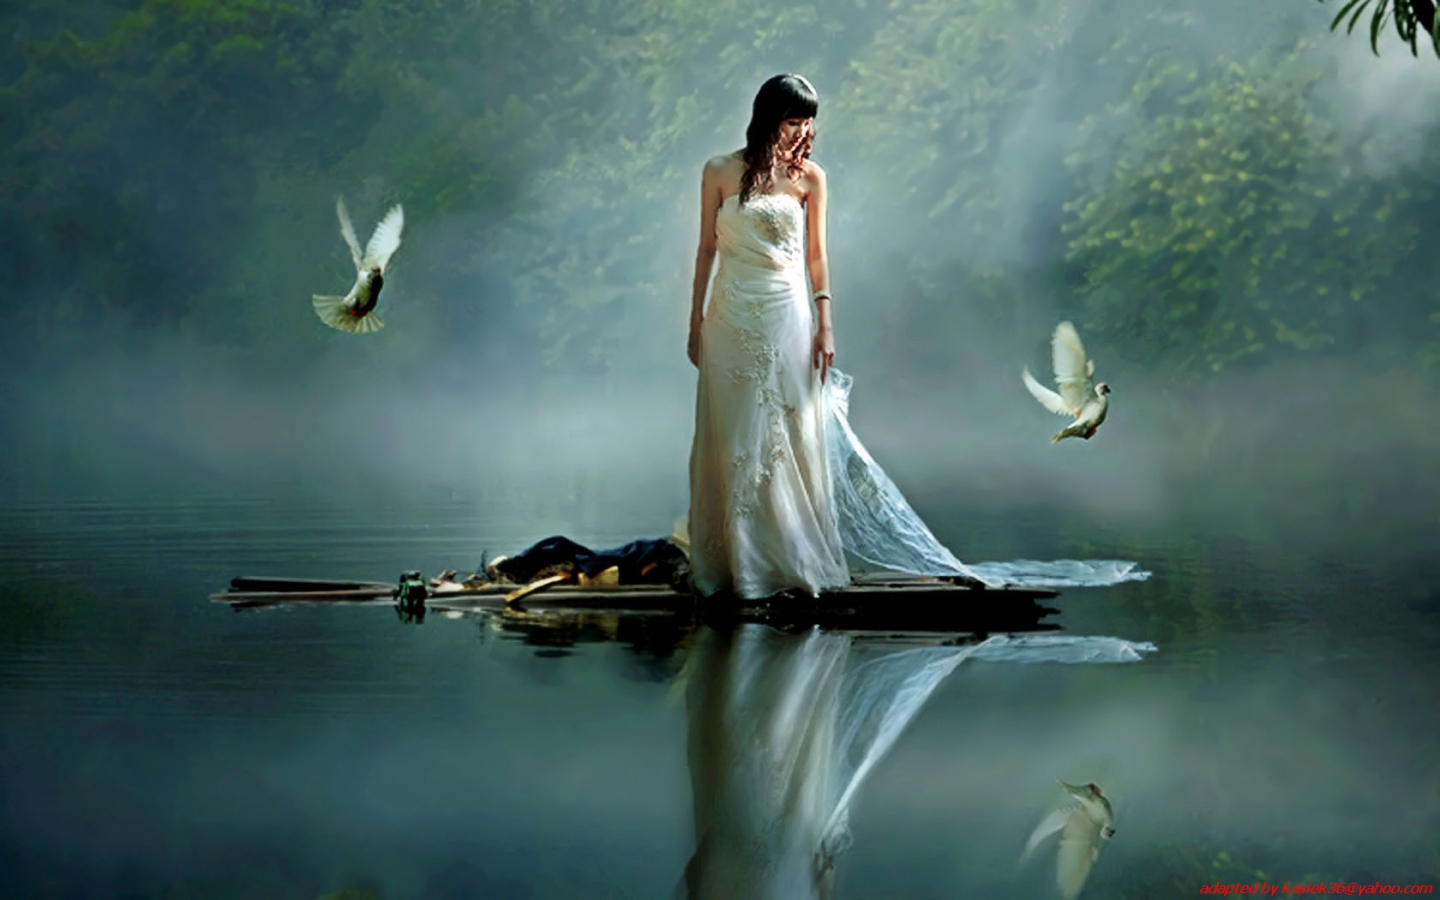 Душа ее отражение. Отражение девушки в воде. Девушка над озером. Ангел воды. Девушка и озеро мистика.